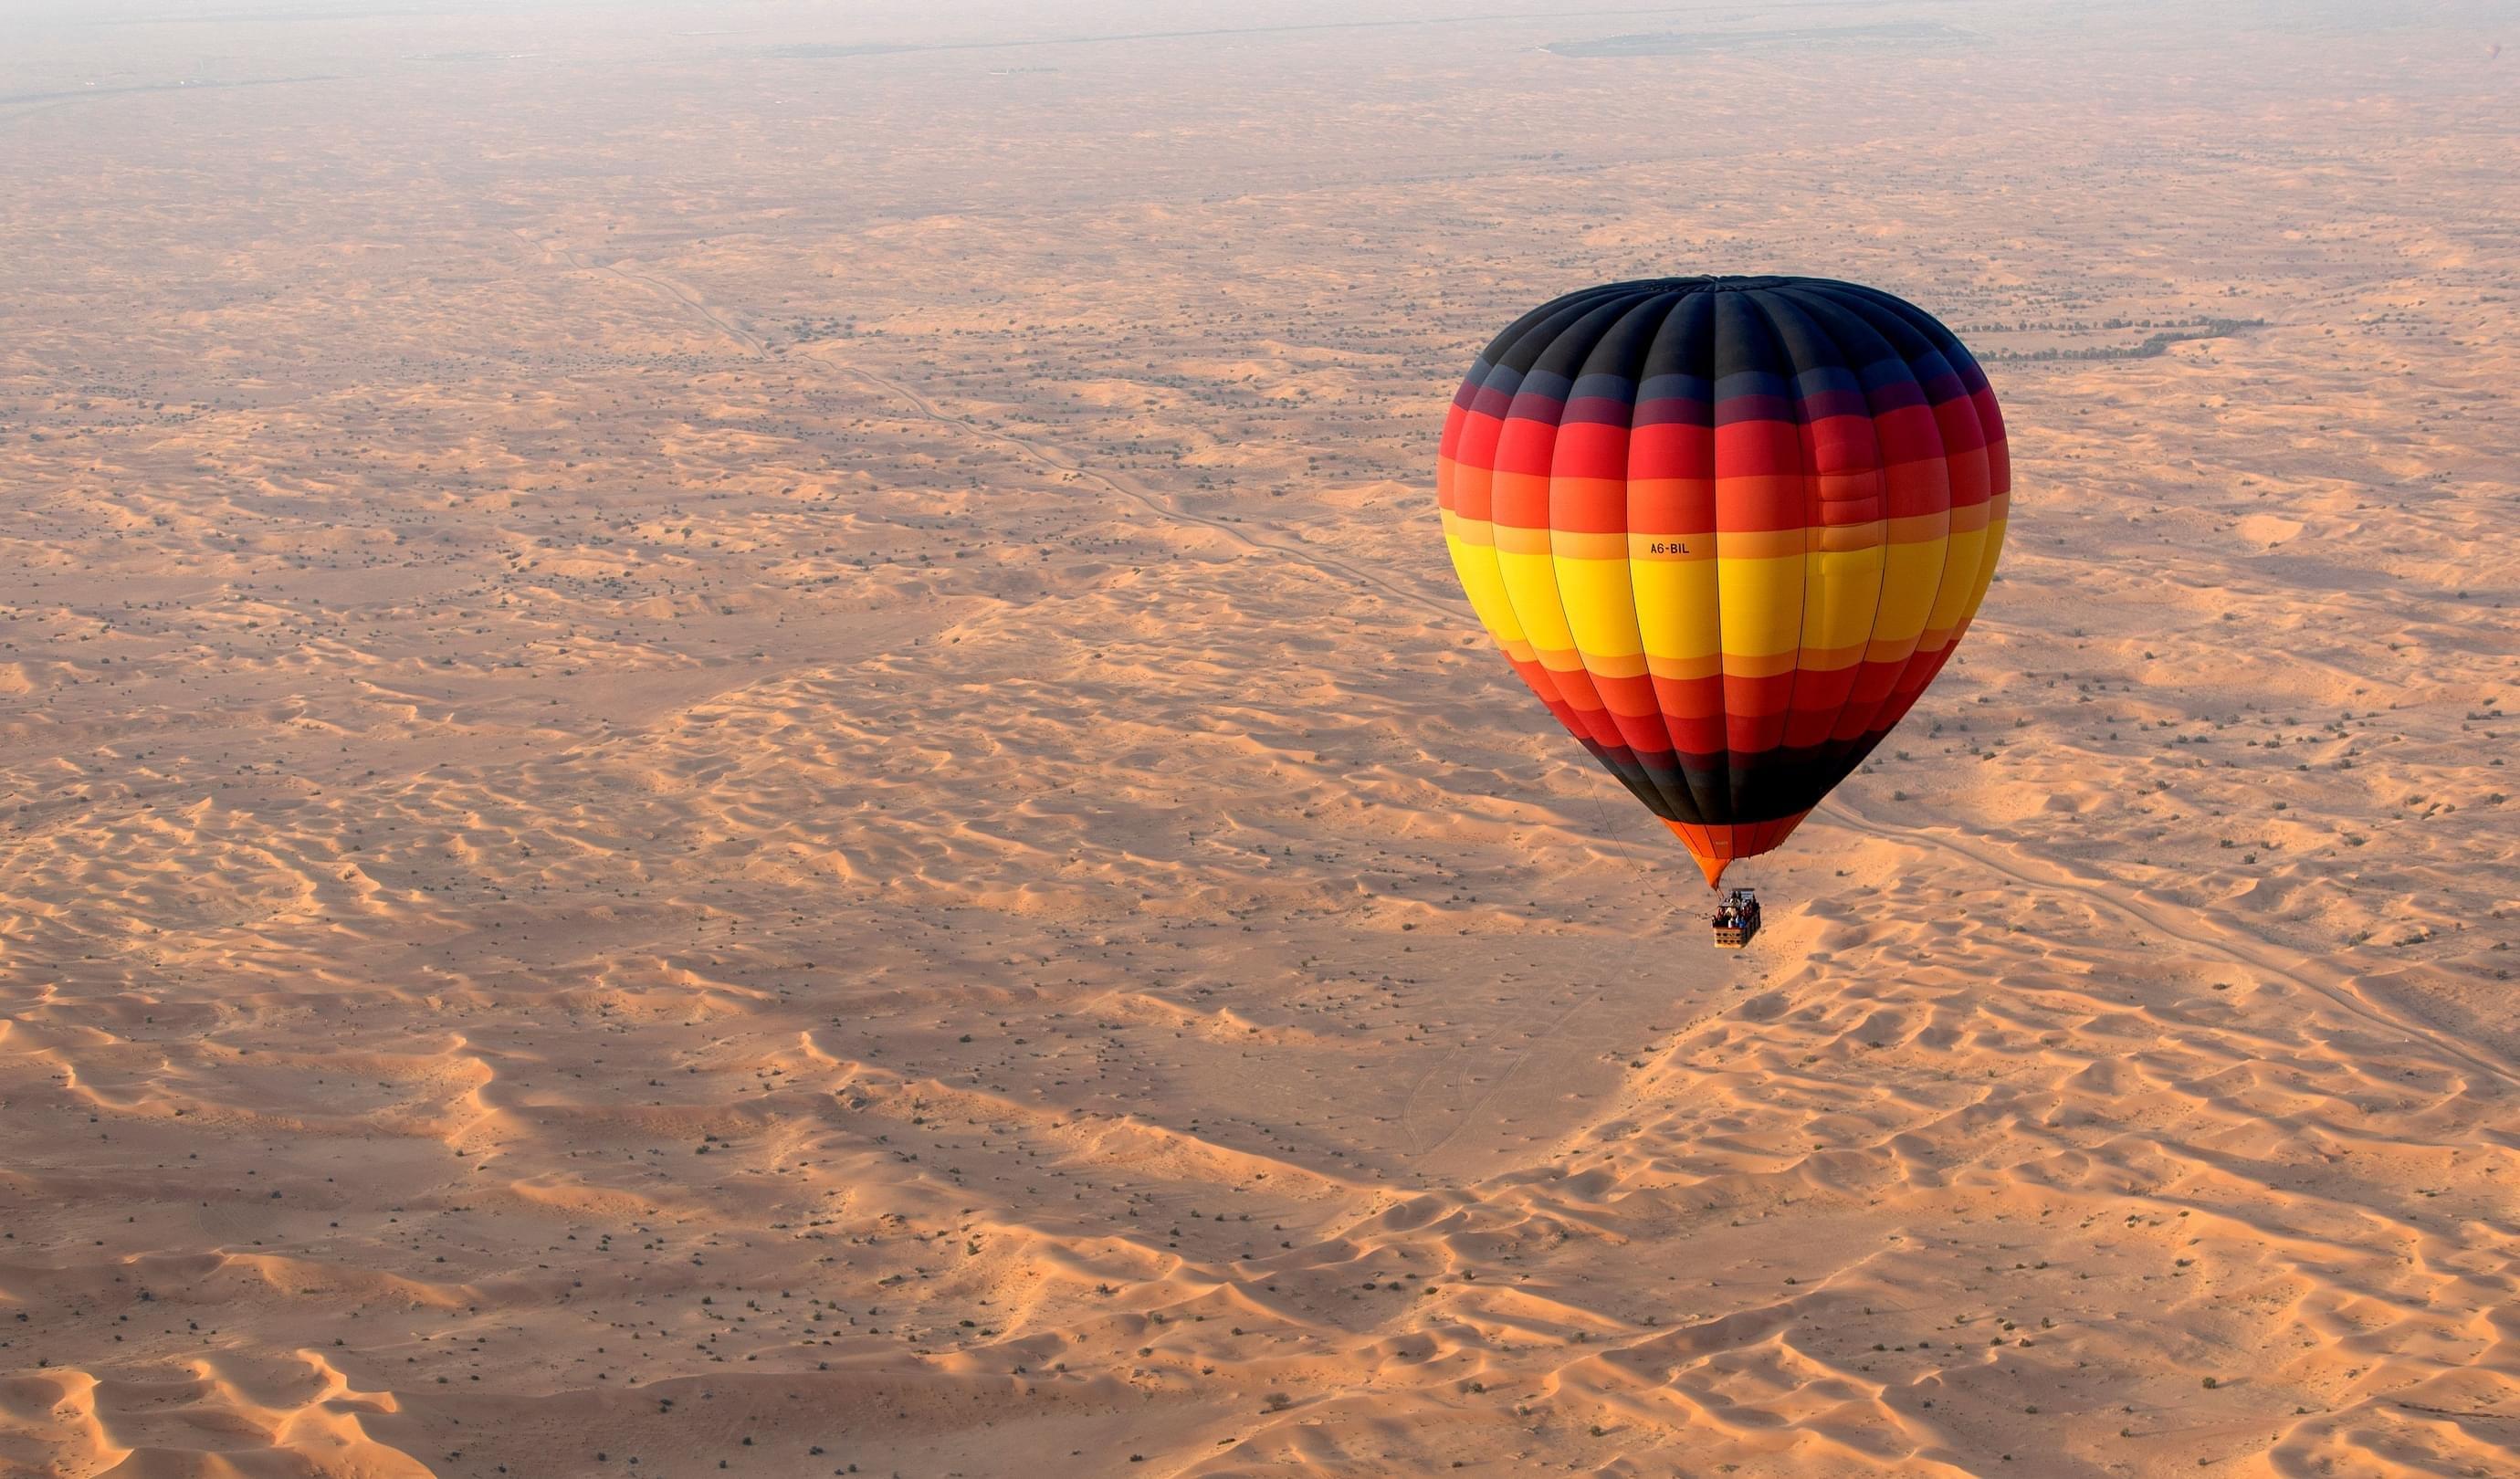 About Hot Air Balloon Dubai